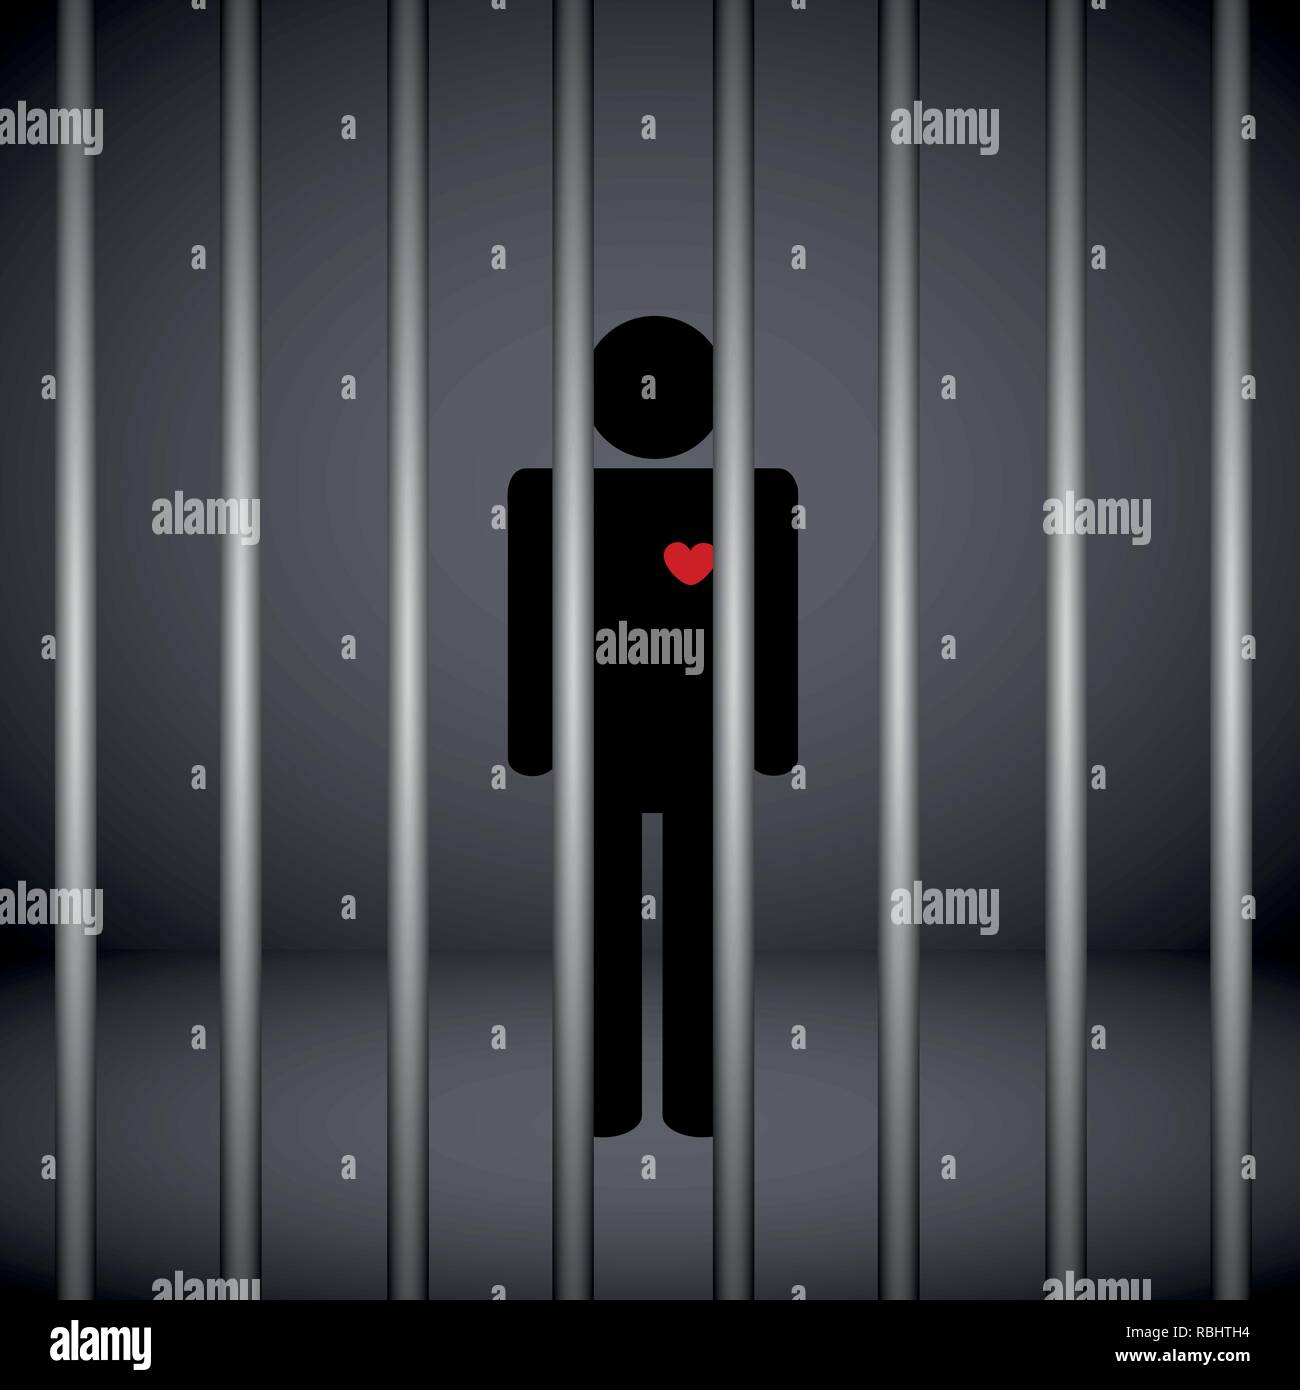 Mann mit roten Herzen im Gefängnis auf dunklem Hintergrund Vektor-illustration EPS 10. Stock Vektor